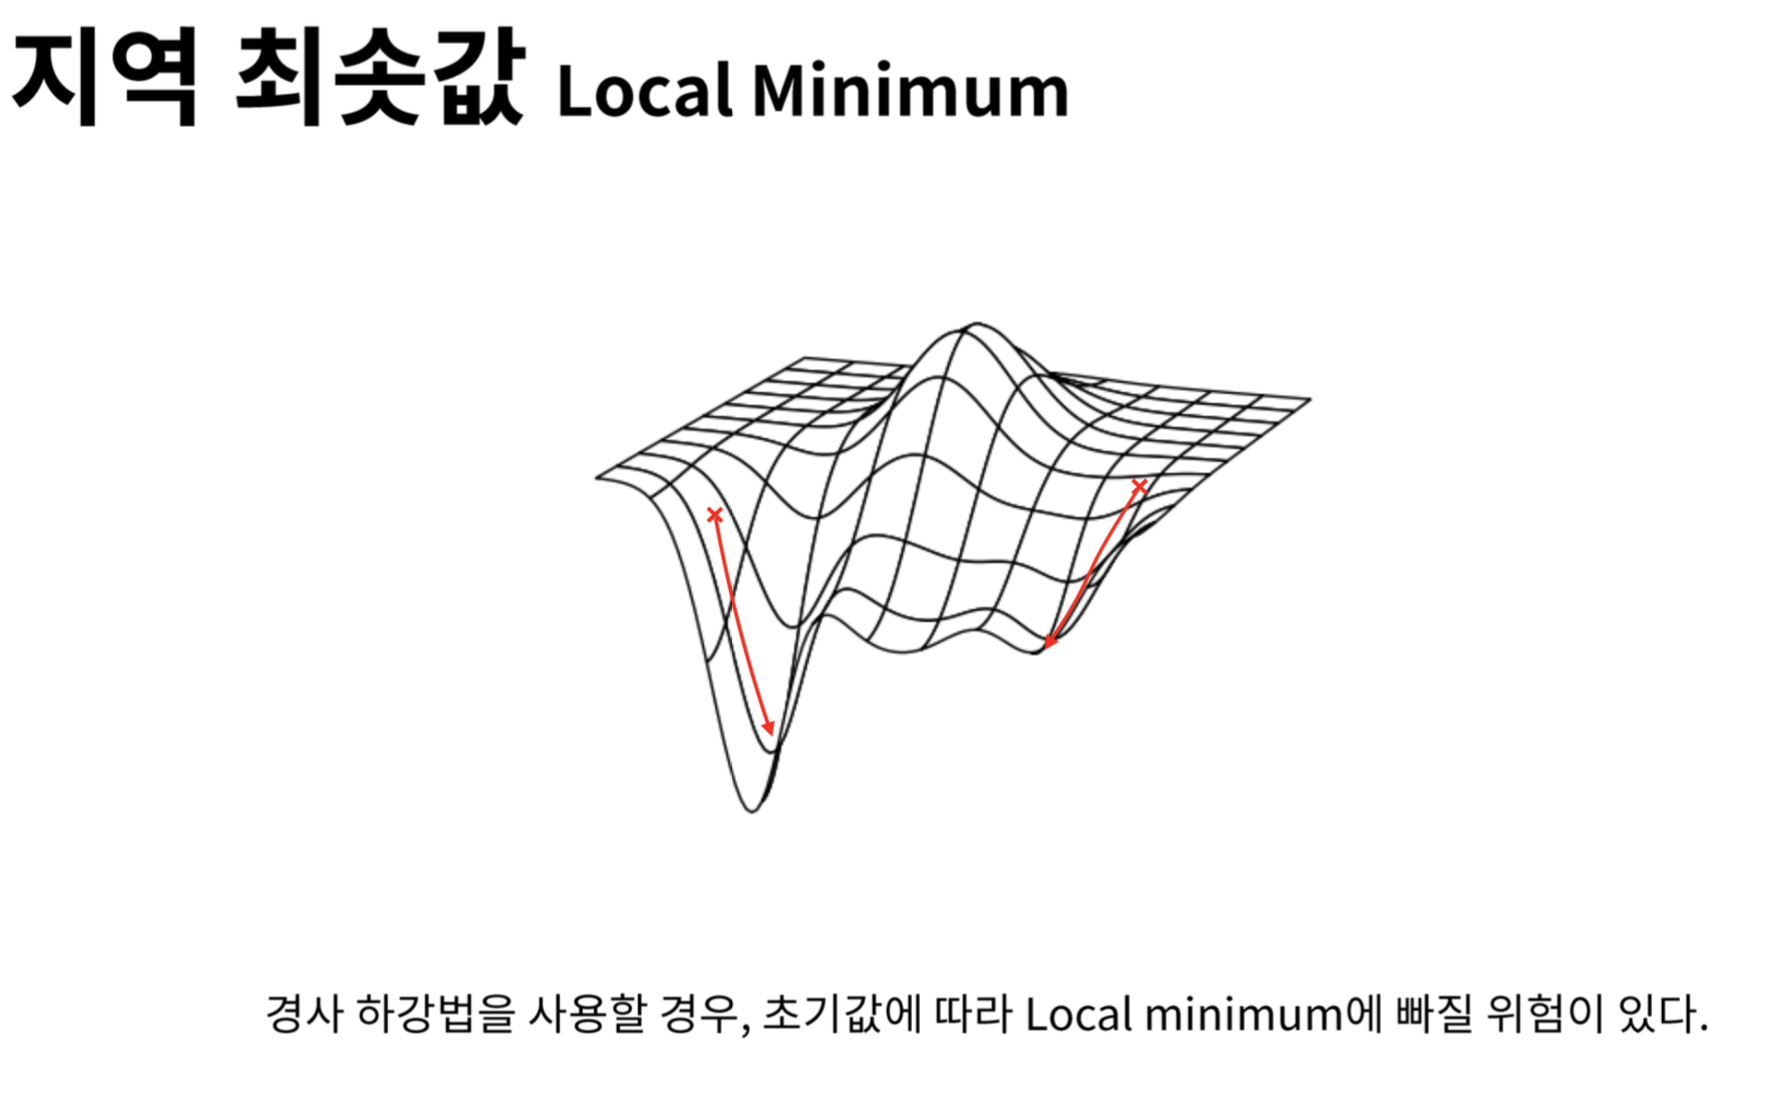 Local Minimum